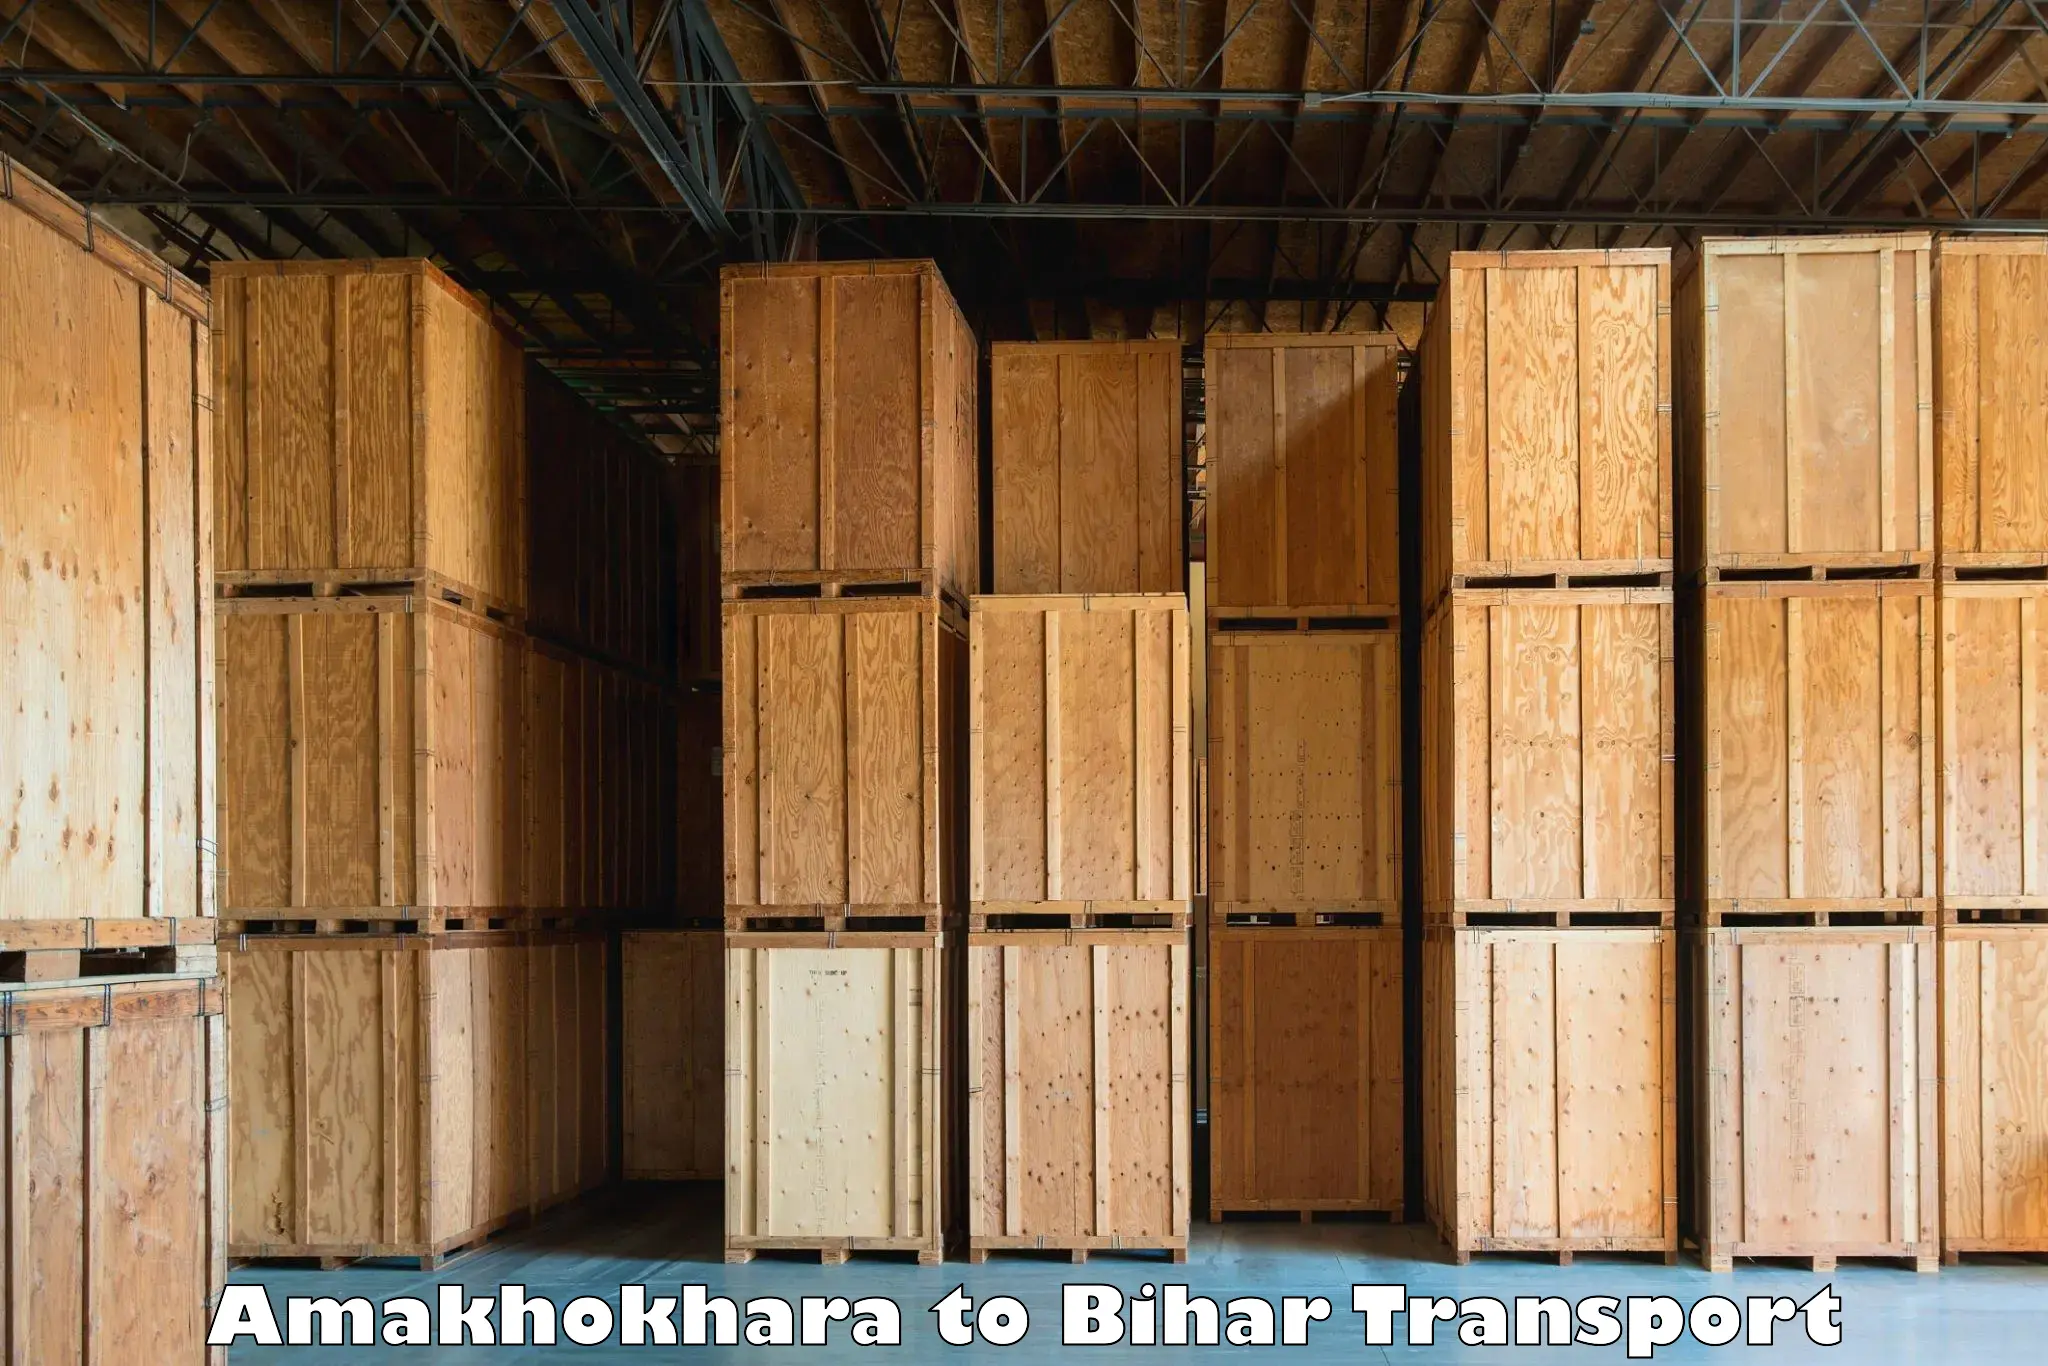 International cargo transportation services Amakhokhara to Katoria